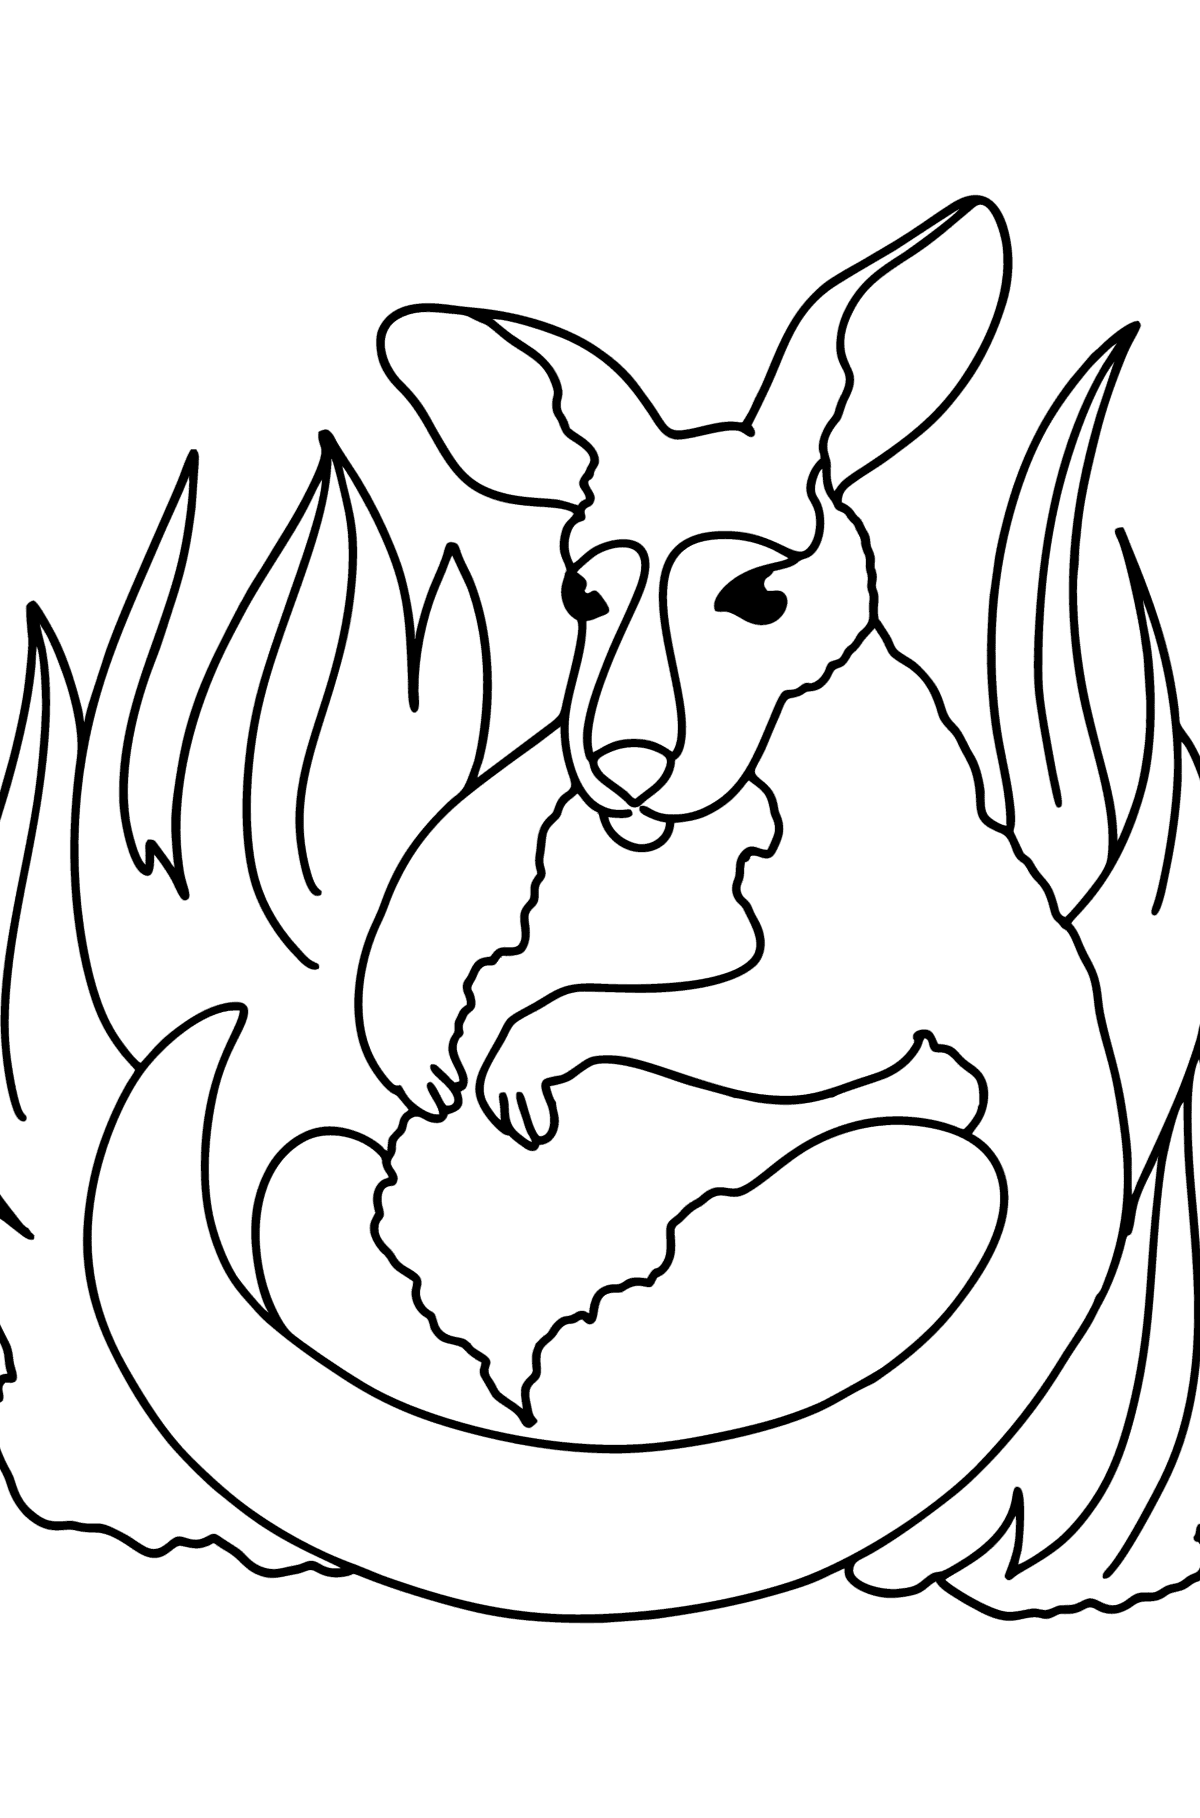 Tegning til farvning betagende kænguru - Tegninger til farvelægning for børn